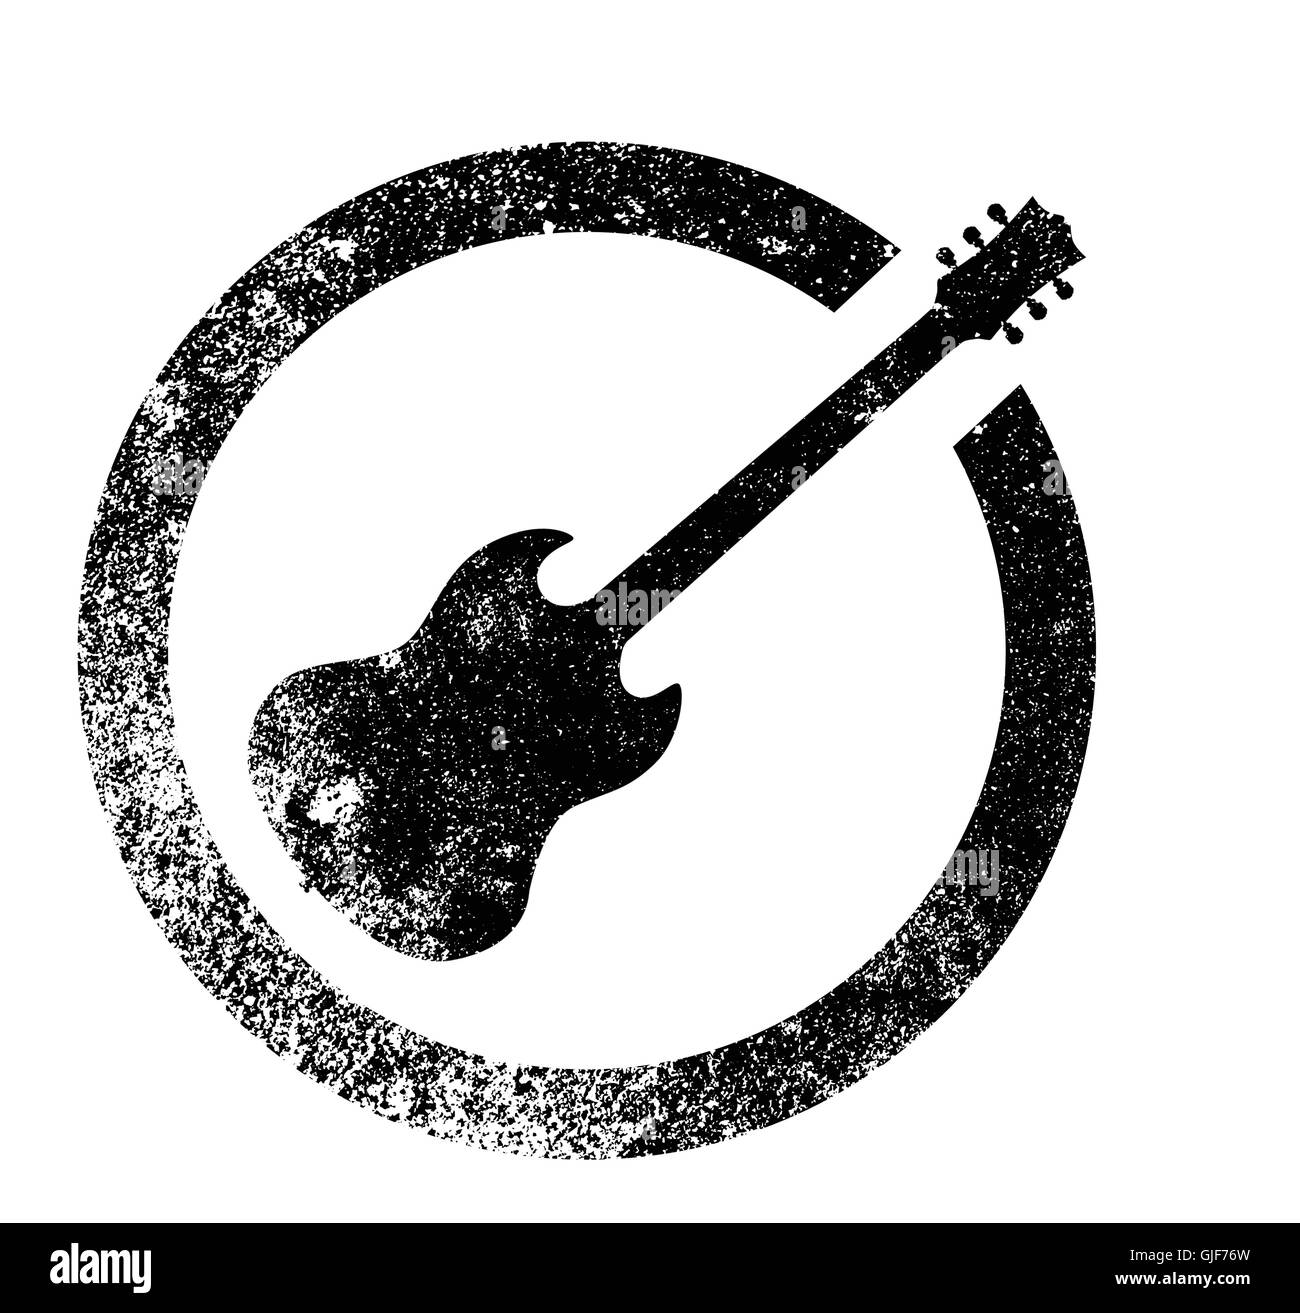 Lo standard rock and roll guitar come gomma timbro di inchiostro in bianco e nero, isolato su uno sfondo bianco. Illustrazione Vettoriale